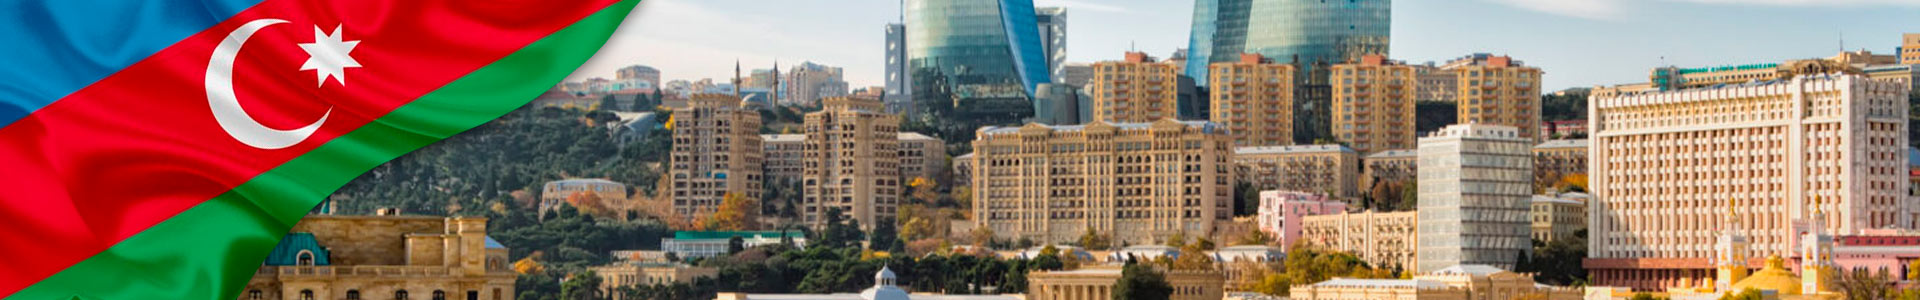 Bandera de Azerbaiyán con foto de la capital Bakú